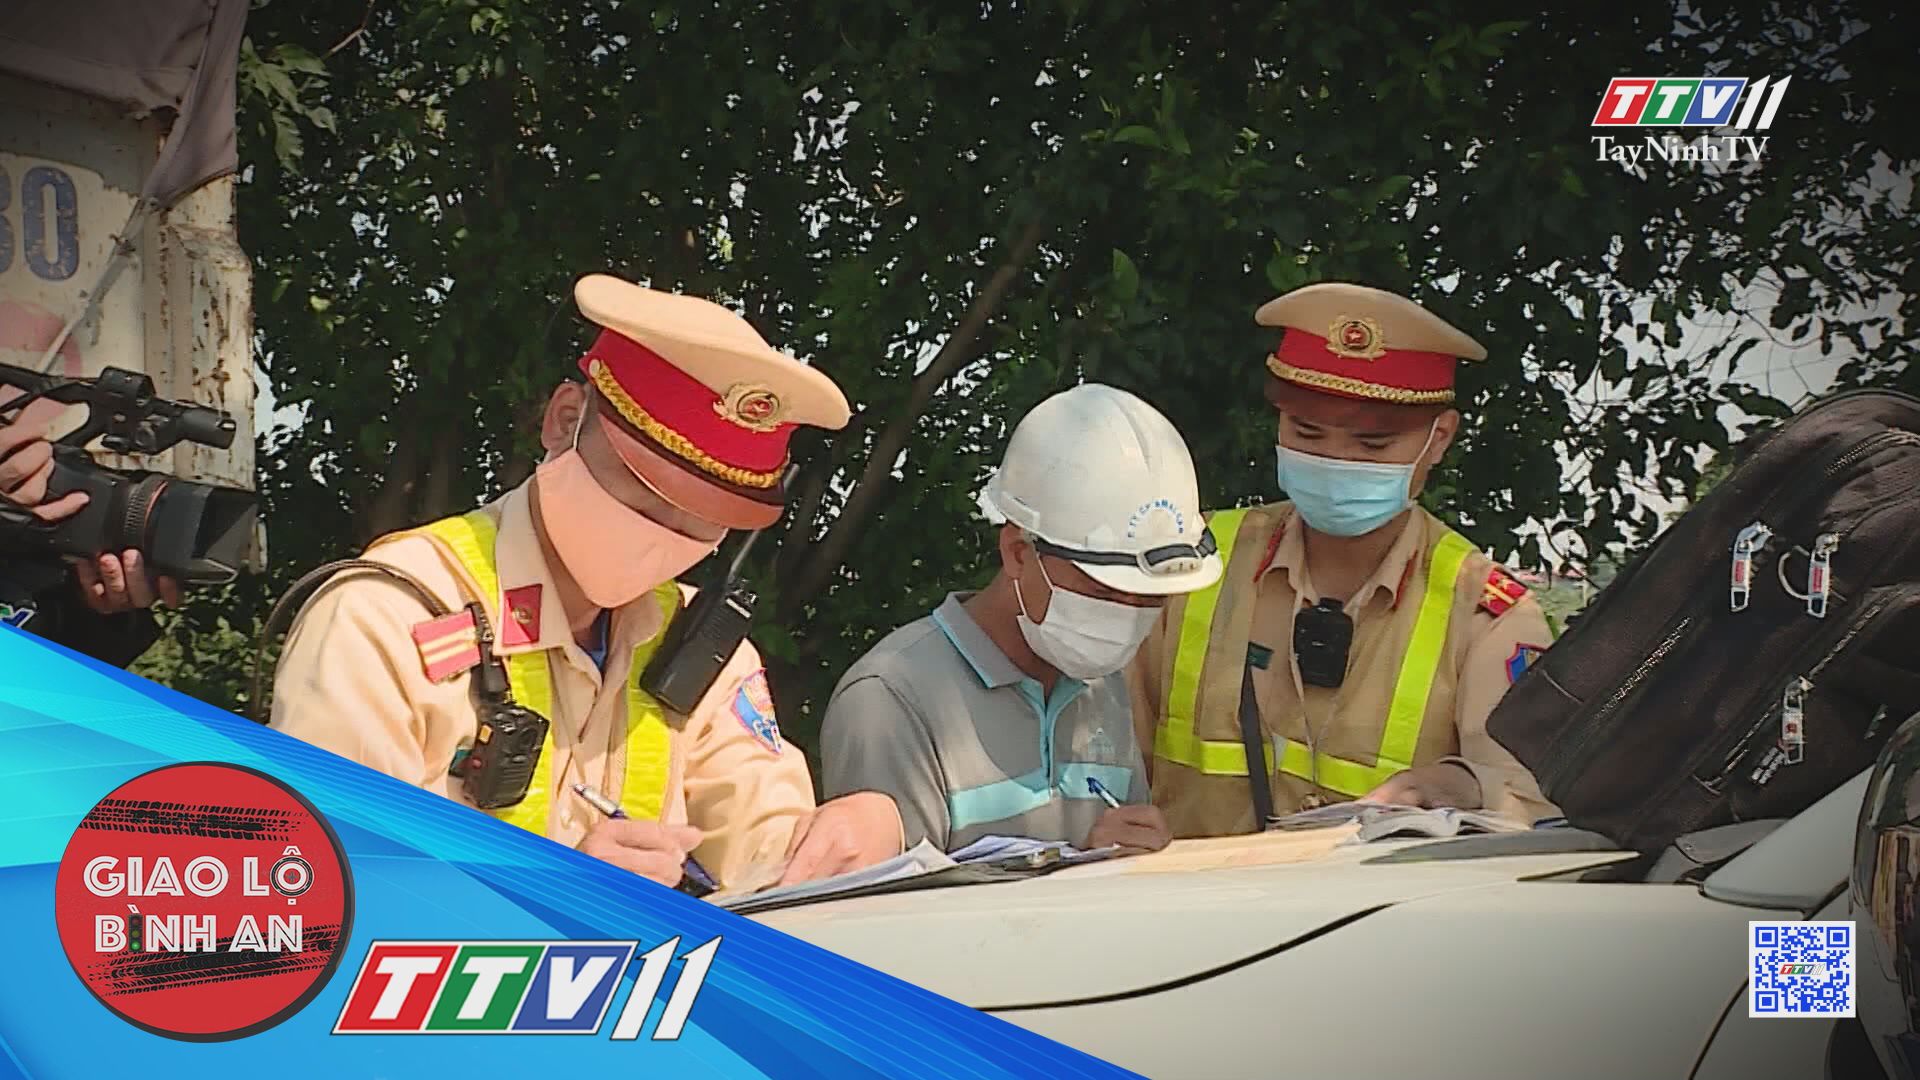 Cảnh báo hành vi báo chốt giao thông | Giao lộ bình an | TayNinhTV